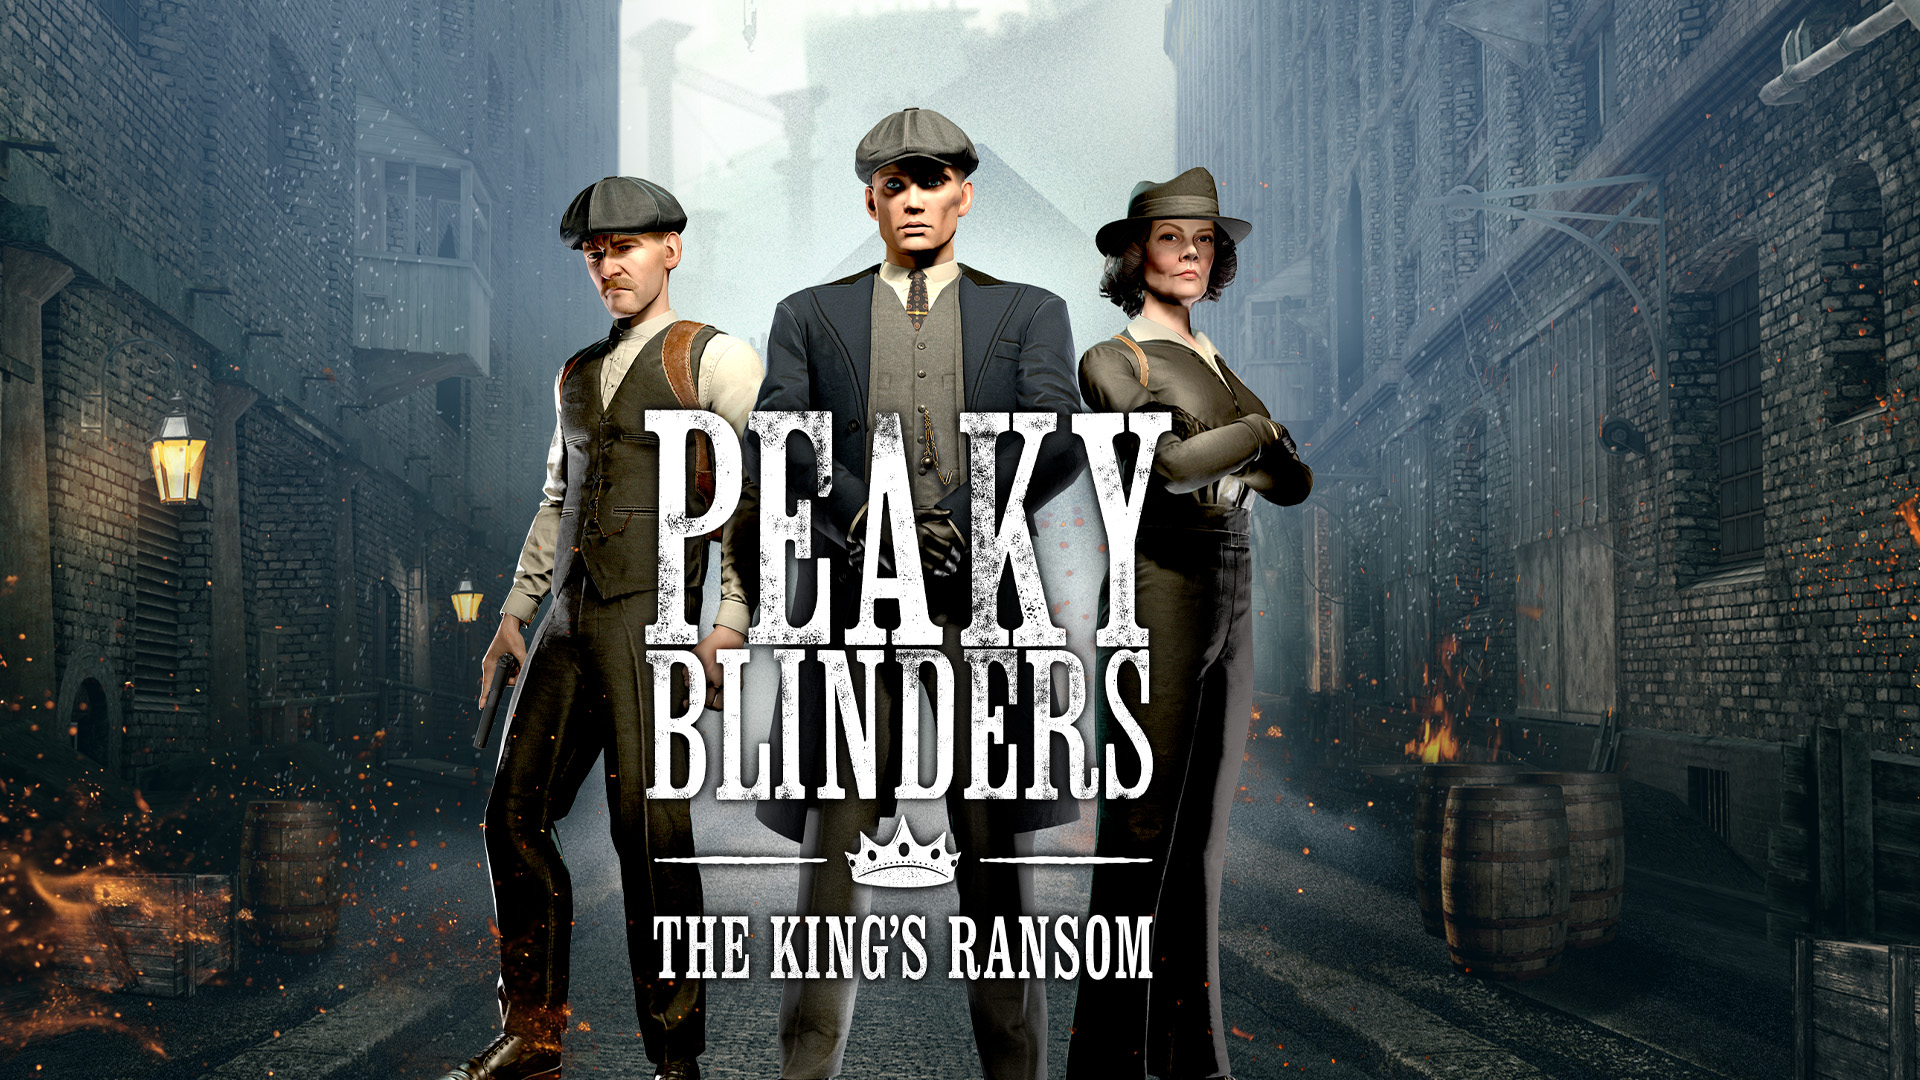 Peaky Blinders Kings Ransom upcoming Meta Quest game